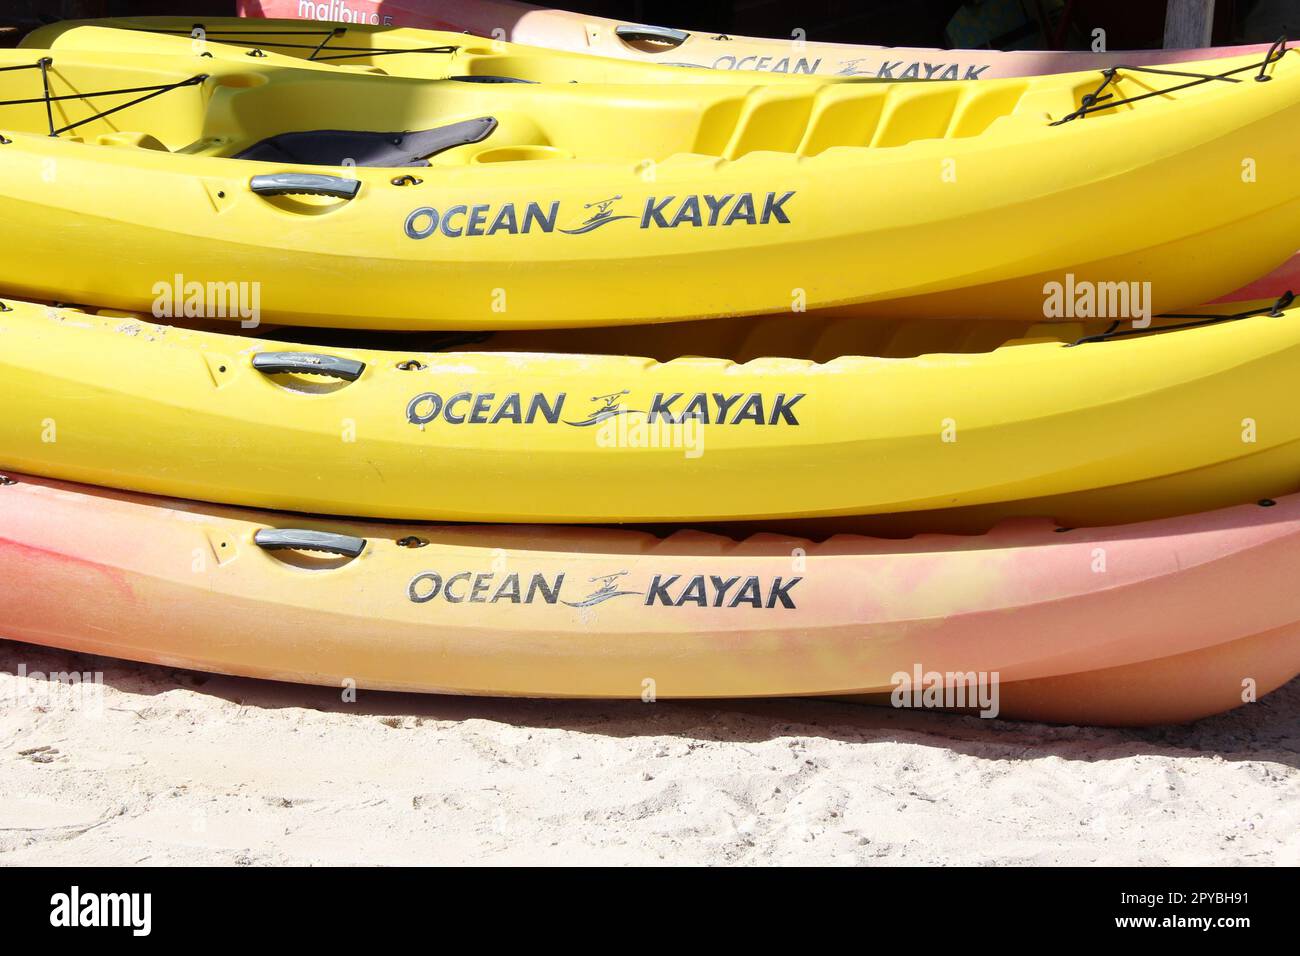 ocean kayaks on the beach Stock Photo